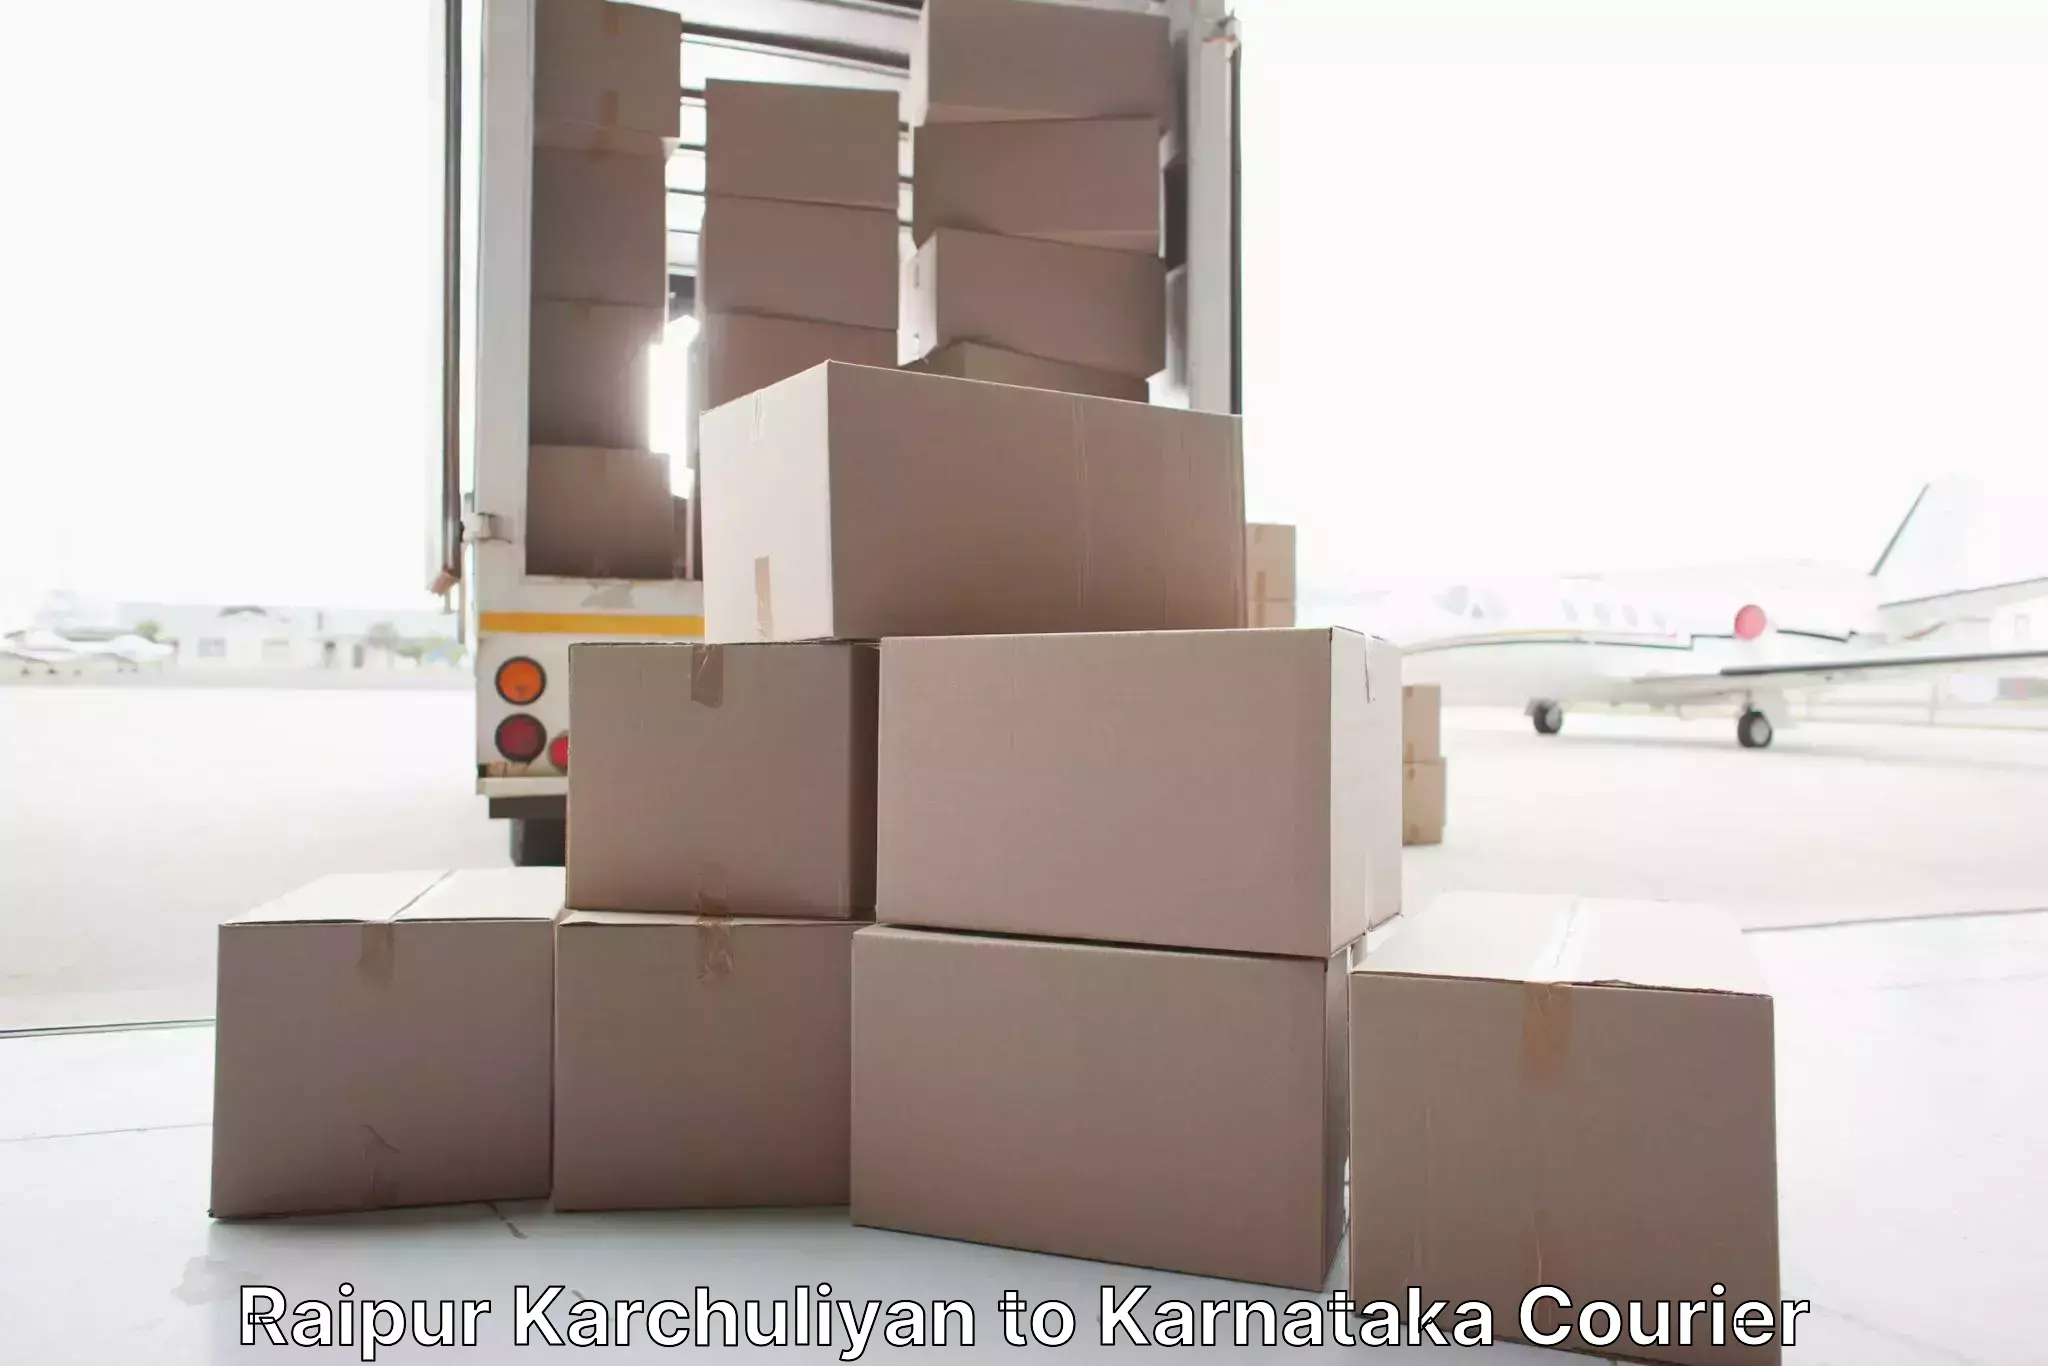 Furniture moving experts Raipur Karchuliyan to Karnataka